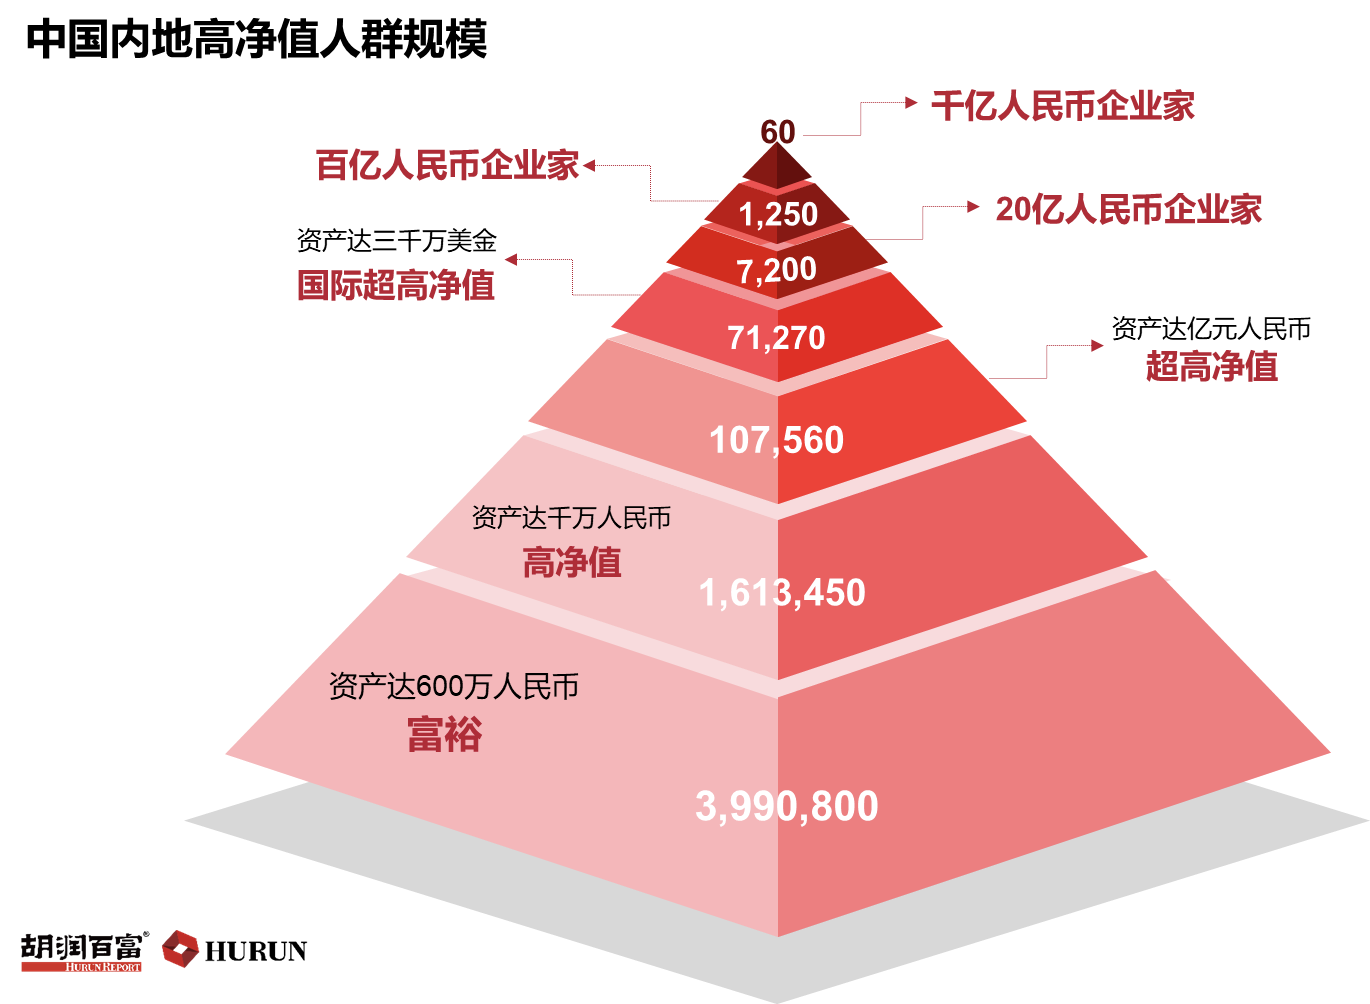 中国拥600万元资产富裕家庭首次突破500万户